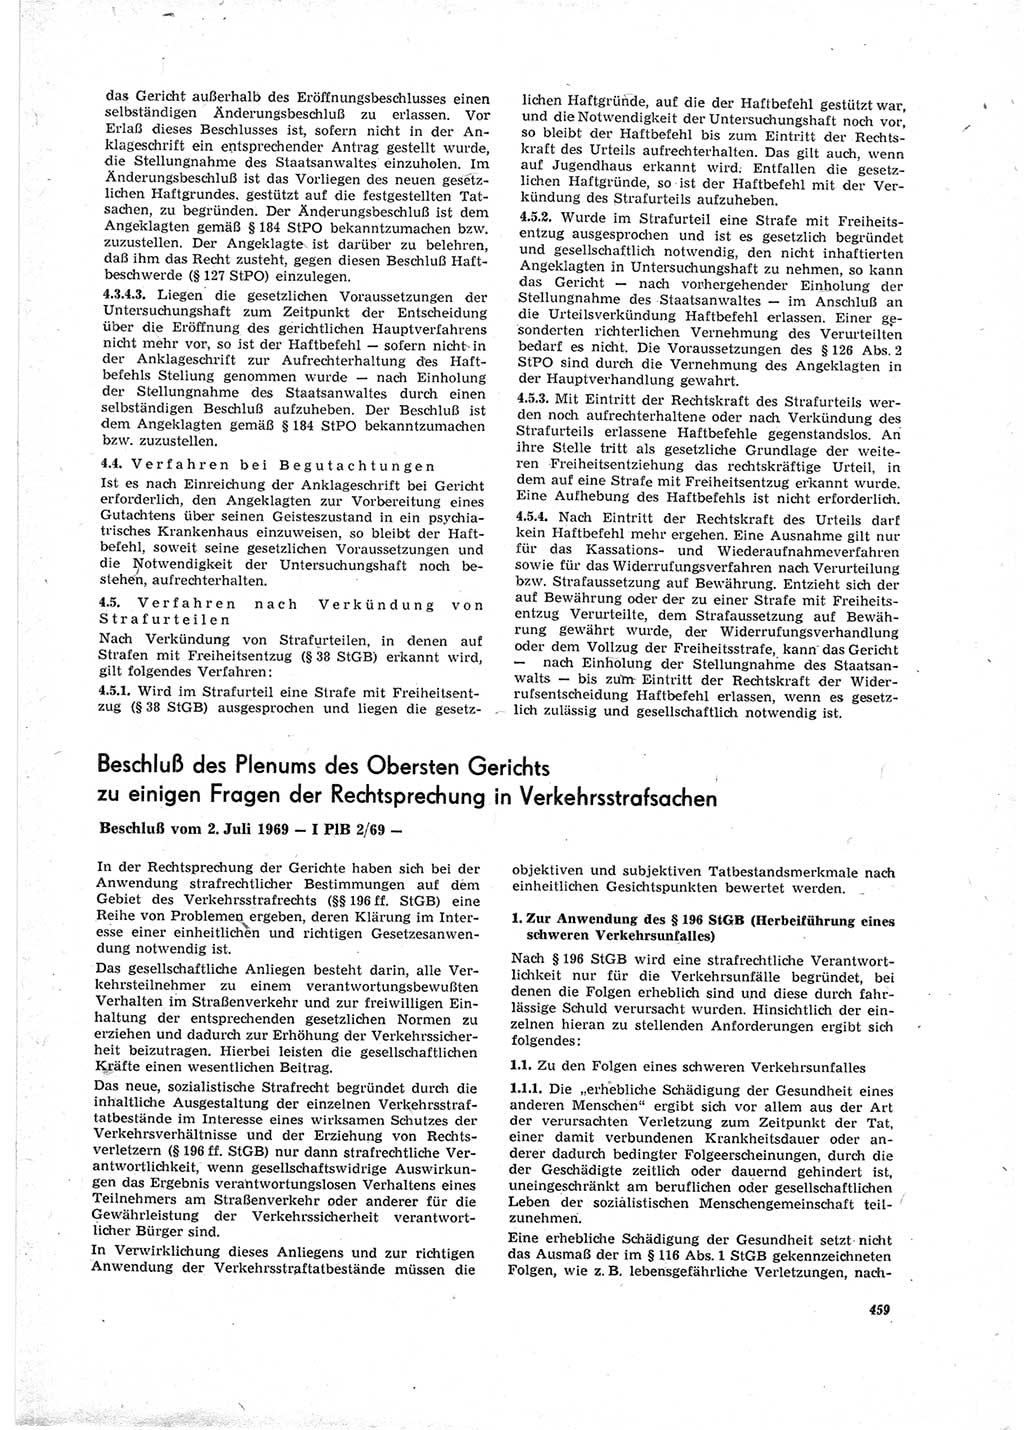 Neue Justiz (NJ), Zeitschrift für Recht und Rechtswissenschaft [Deutsche Demokratische Republik (DDR)], 23. Jahrgang 1969, Seite 459 (NJ DDR 1969, S. 459)